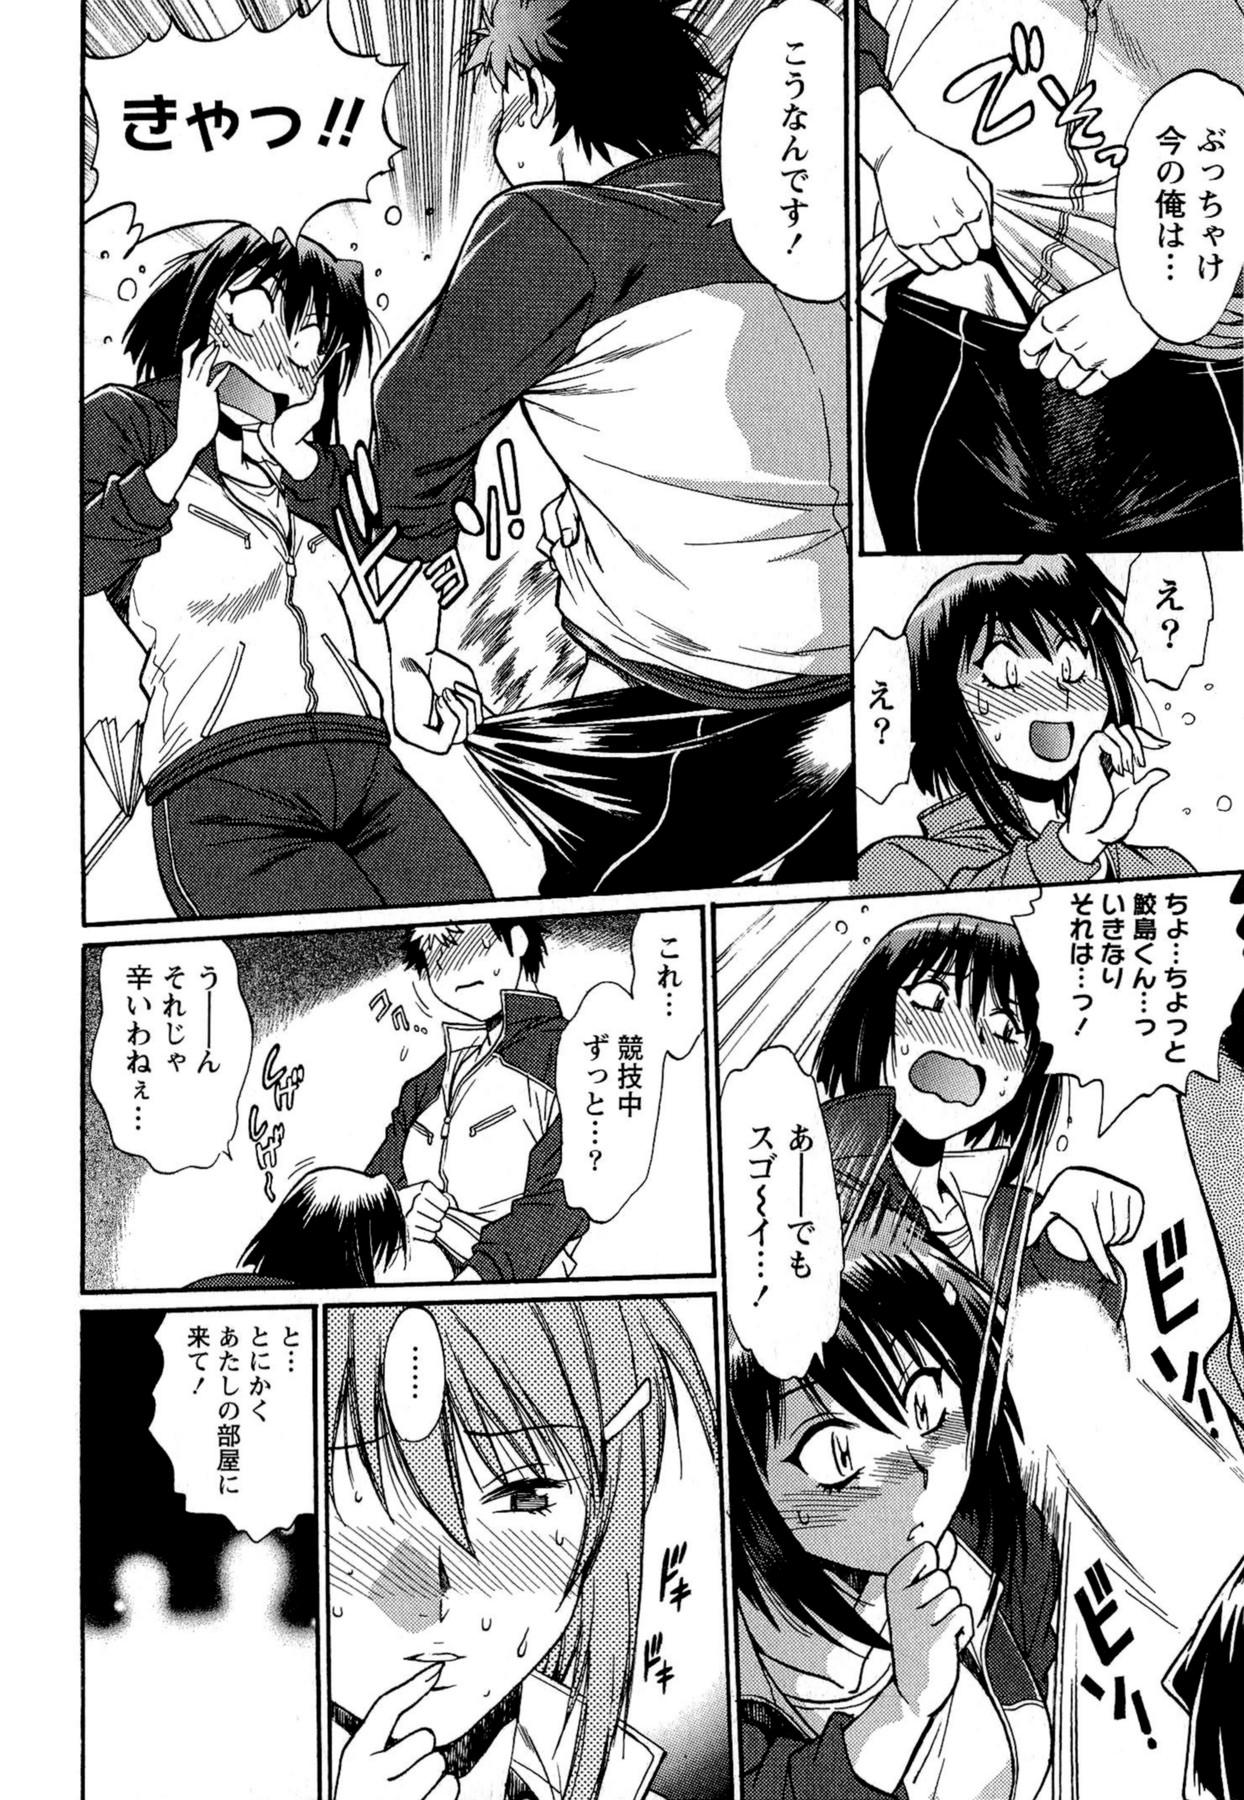 Naughty Kuikomi wo Naoshiteru Hima wa Nai! Vol. 2 Eating - Page 12